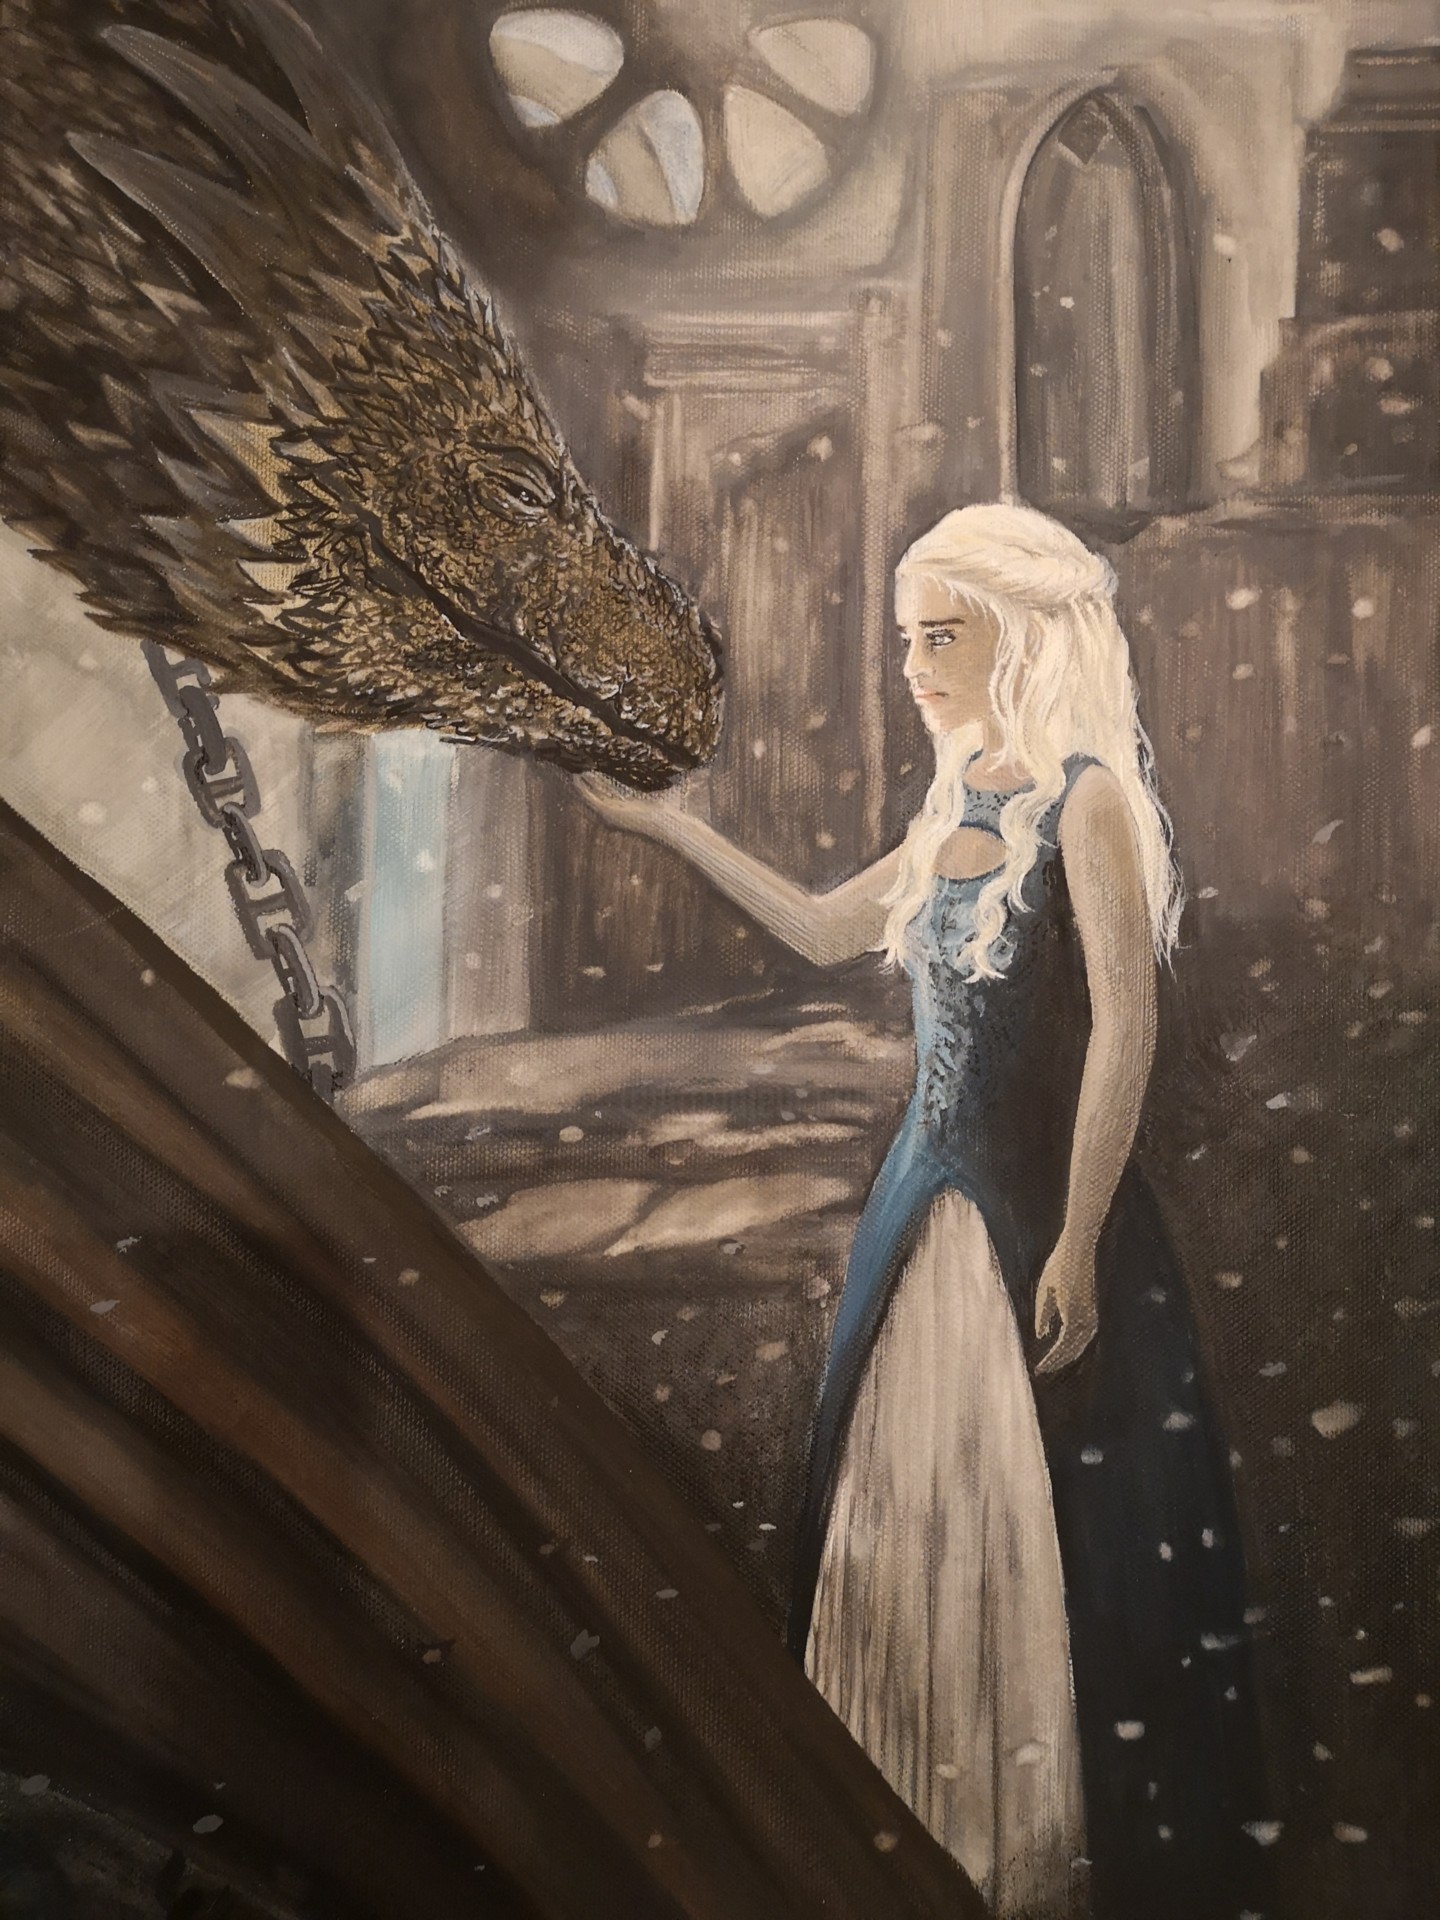 Dragon Queen Khaleesi Cartoon Artwork Wallpapers